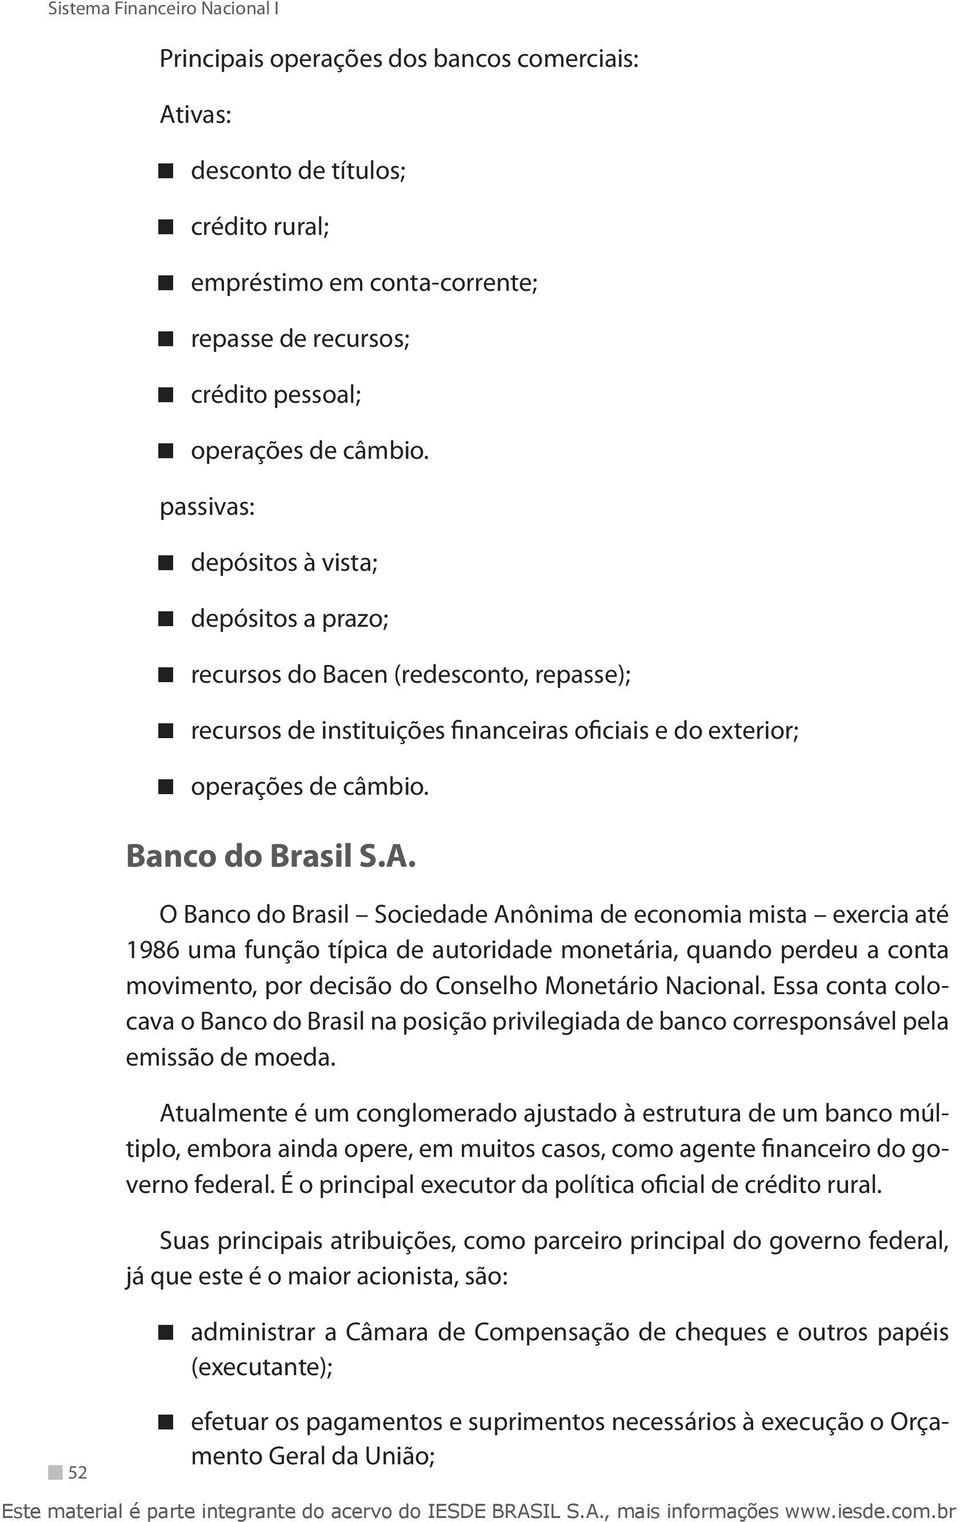 O Banco do Brasil Sociedade Anônima de economia mista exercia até 1986 uma função típica de autoridade monetária, quando perdeu a conta movimento, por decisão do Conselho Monetário Nacional.